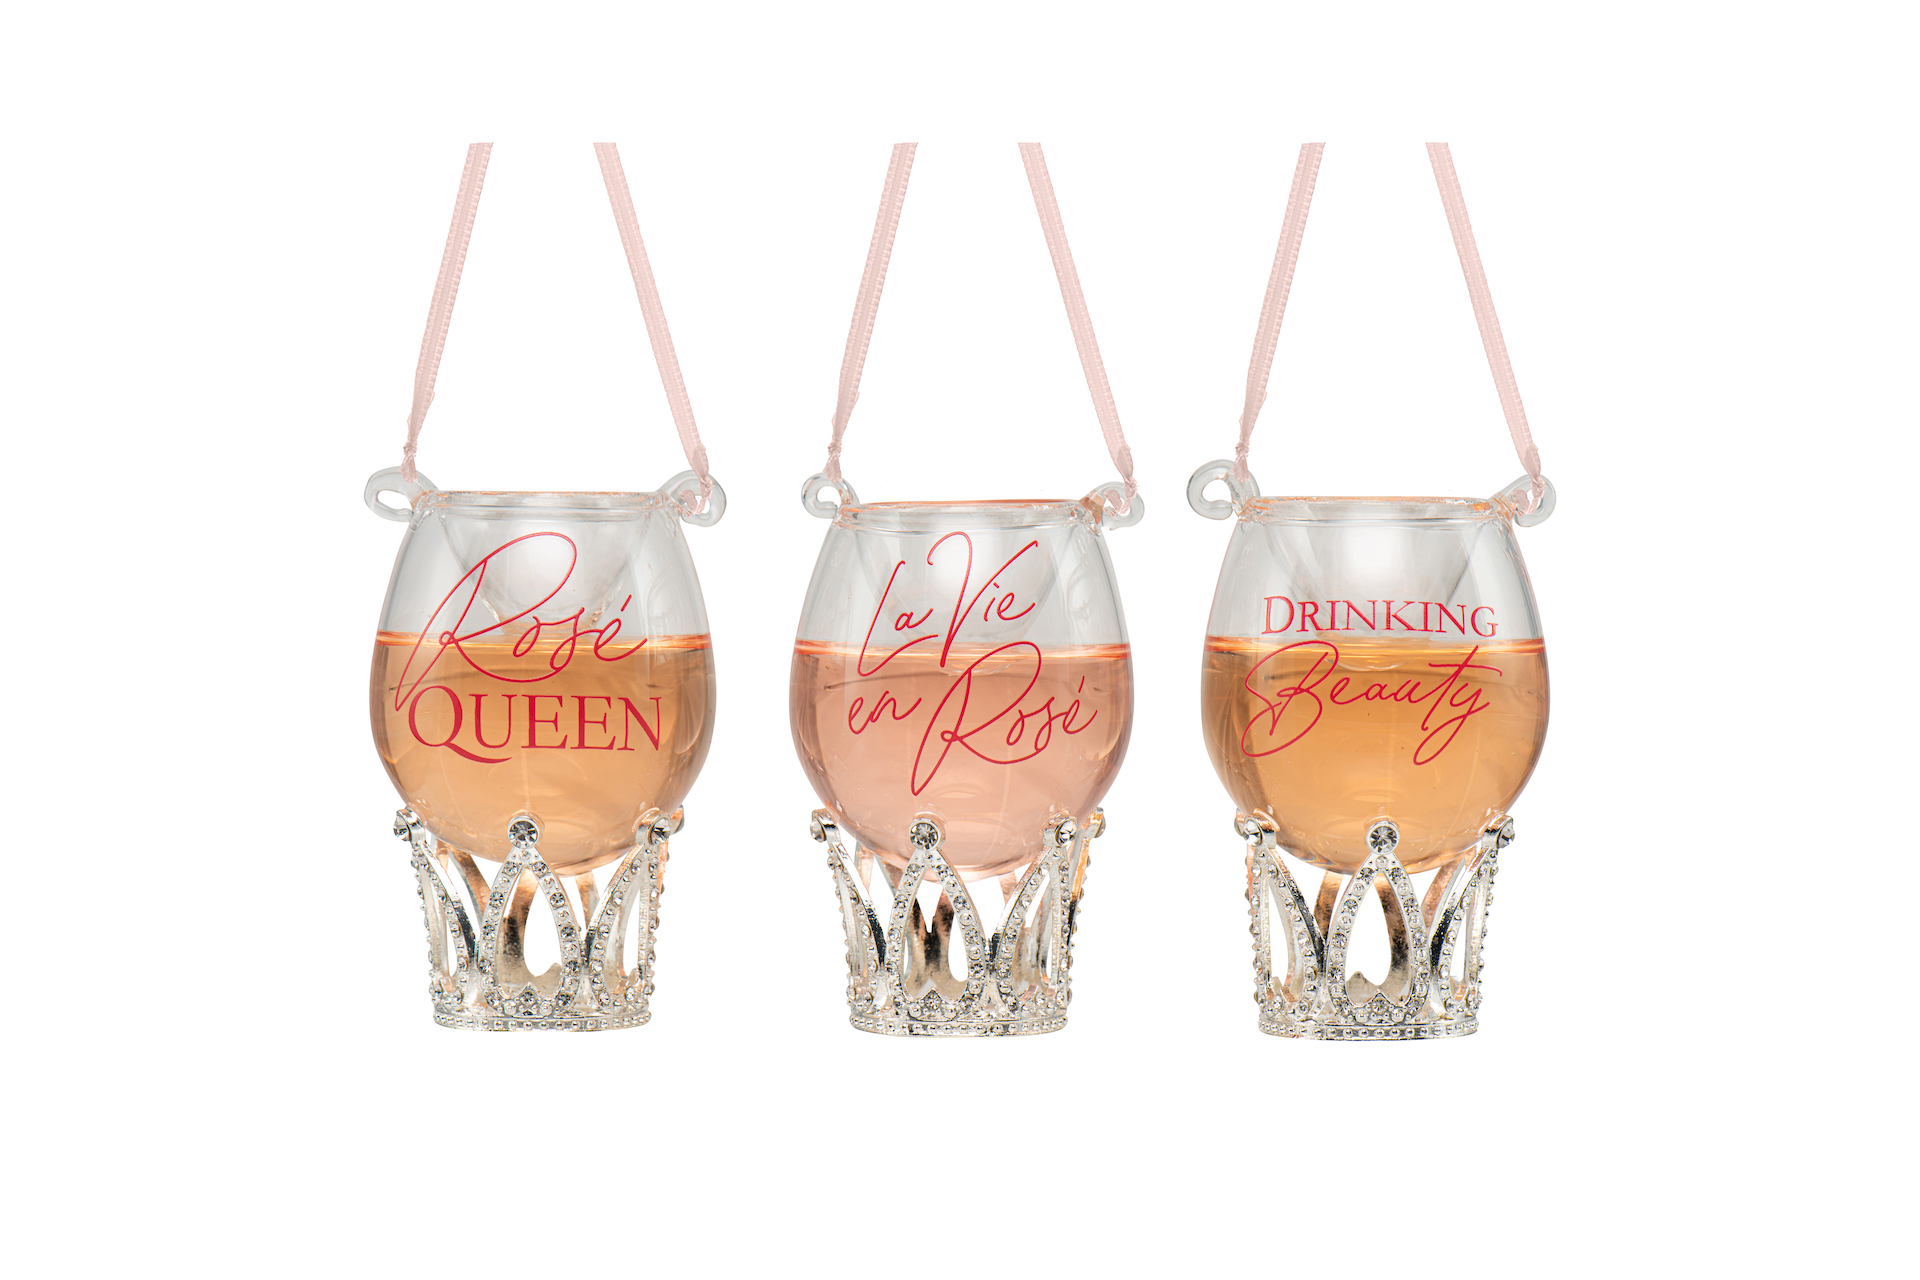 Rosé bottle + wine ornaments glass - Kurt s Adler™ (2st)